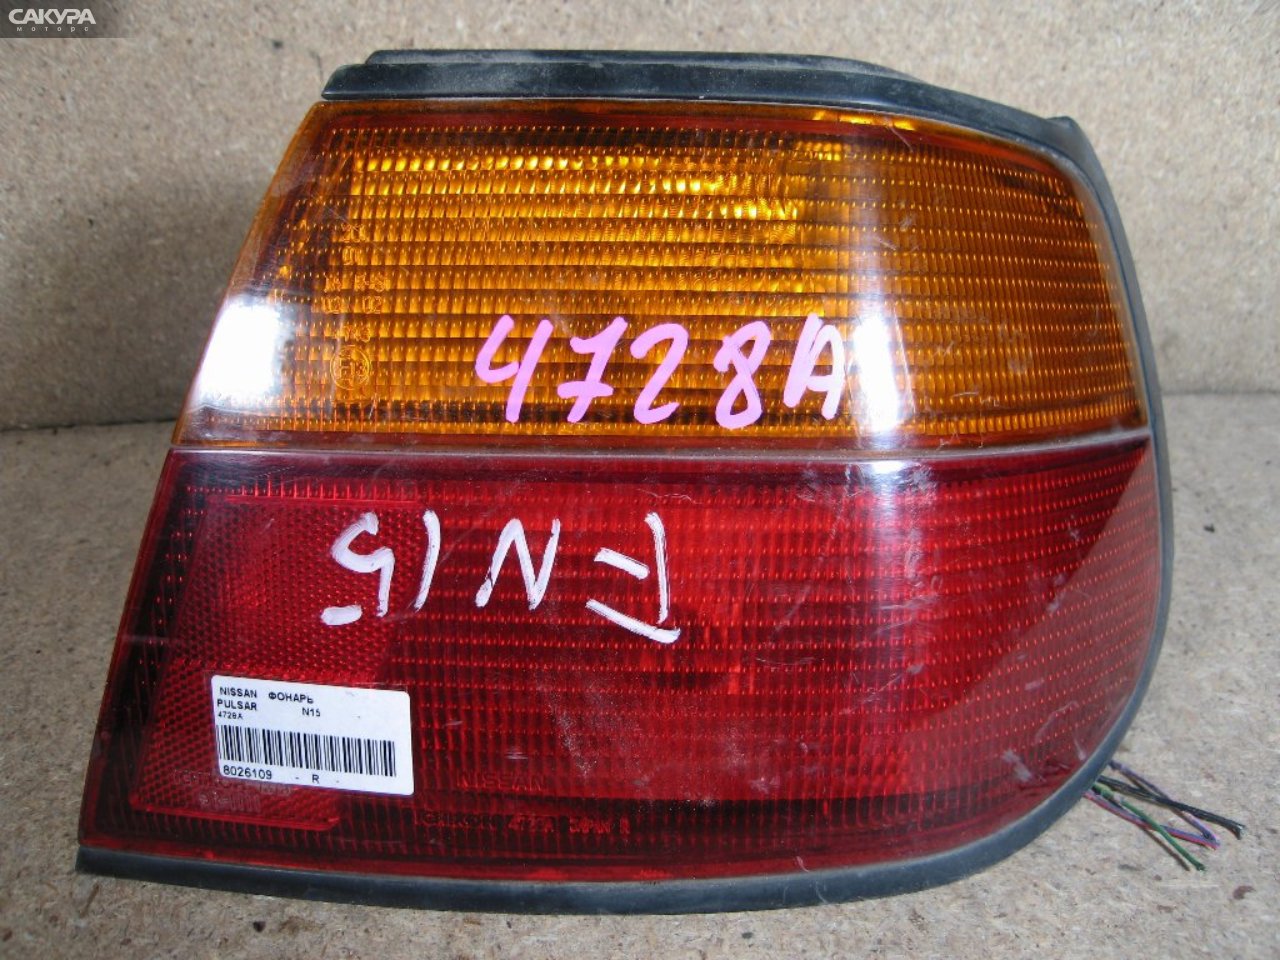 Фонарь стоп-сигнала правый Nissan Pulsar FN15 4728: купить в Сакура Абакан.